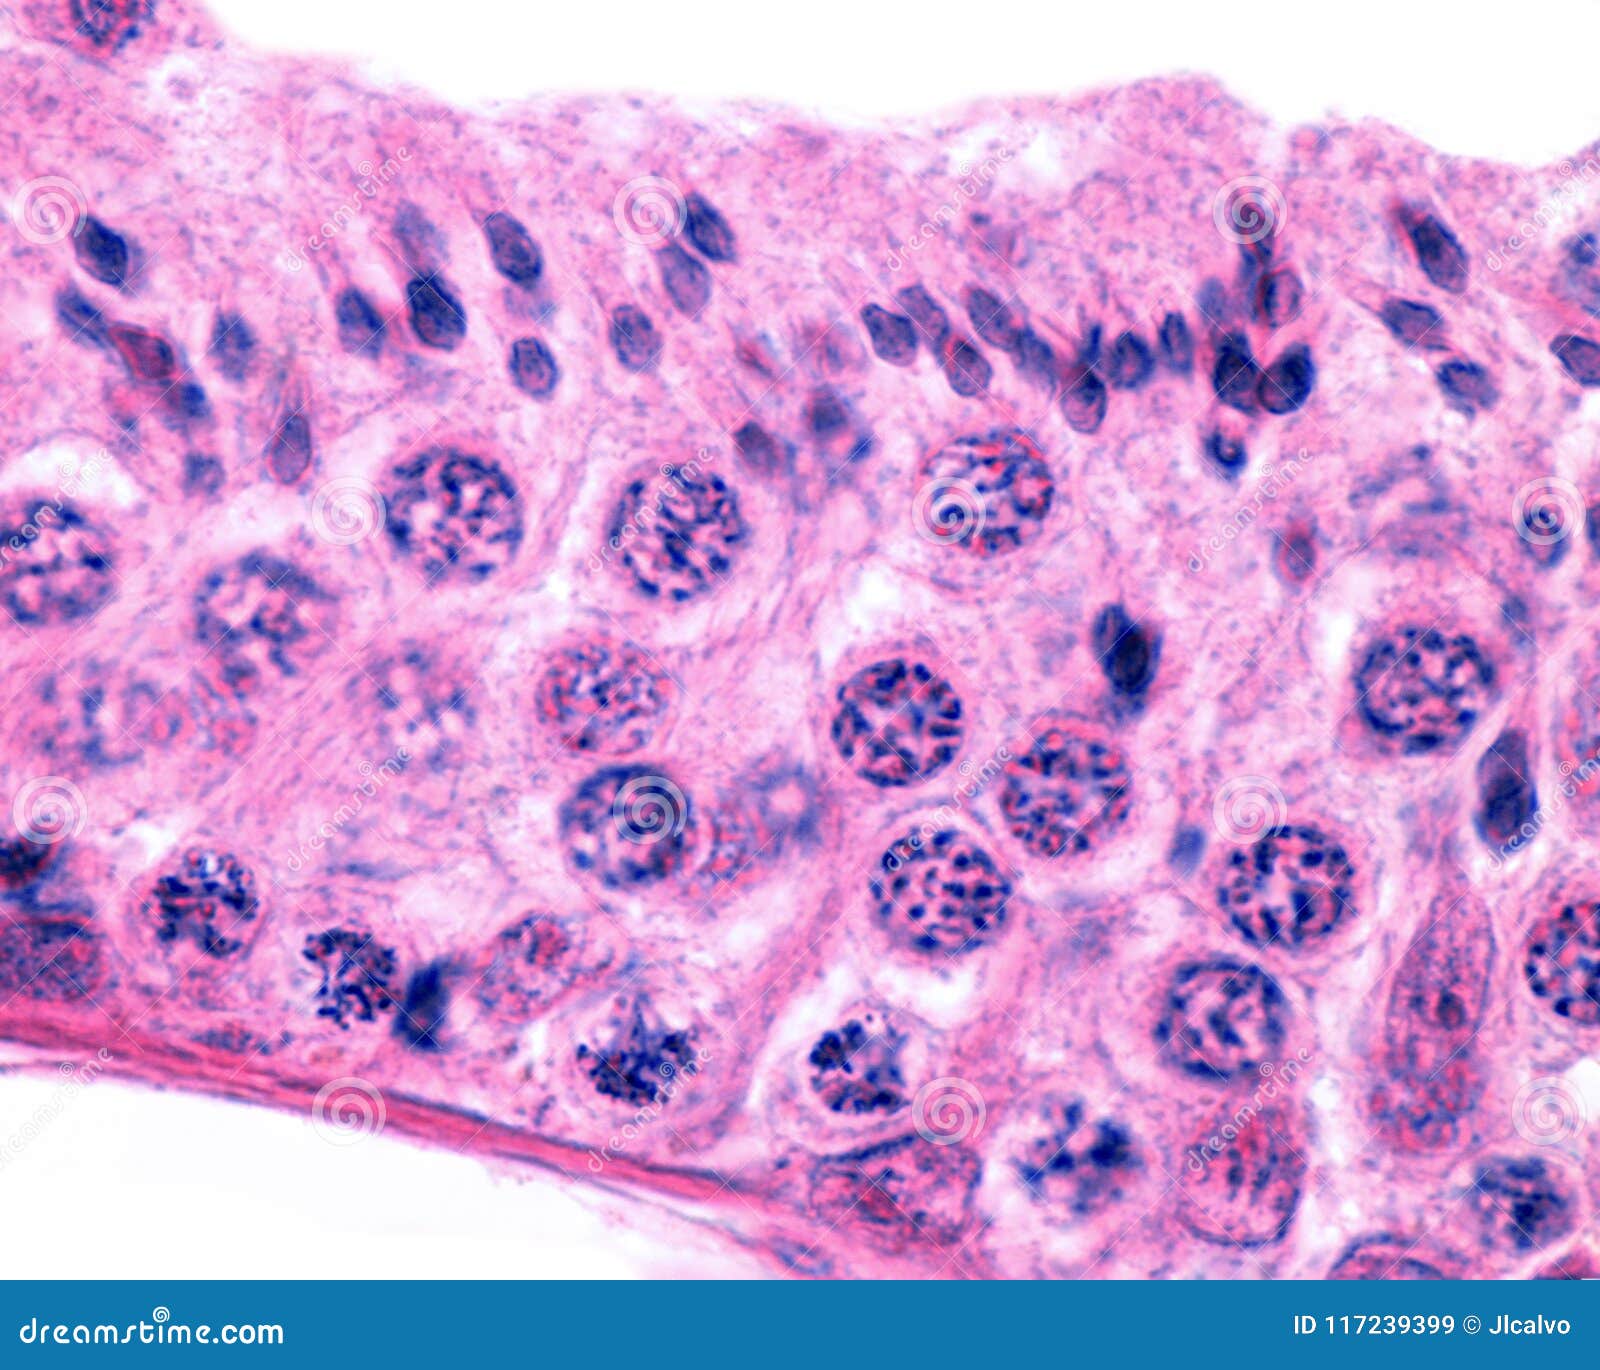 male germinal epithelium. spermatogenesis